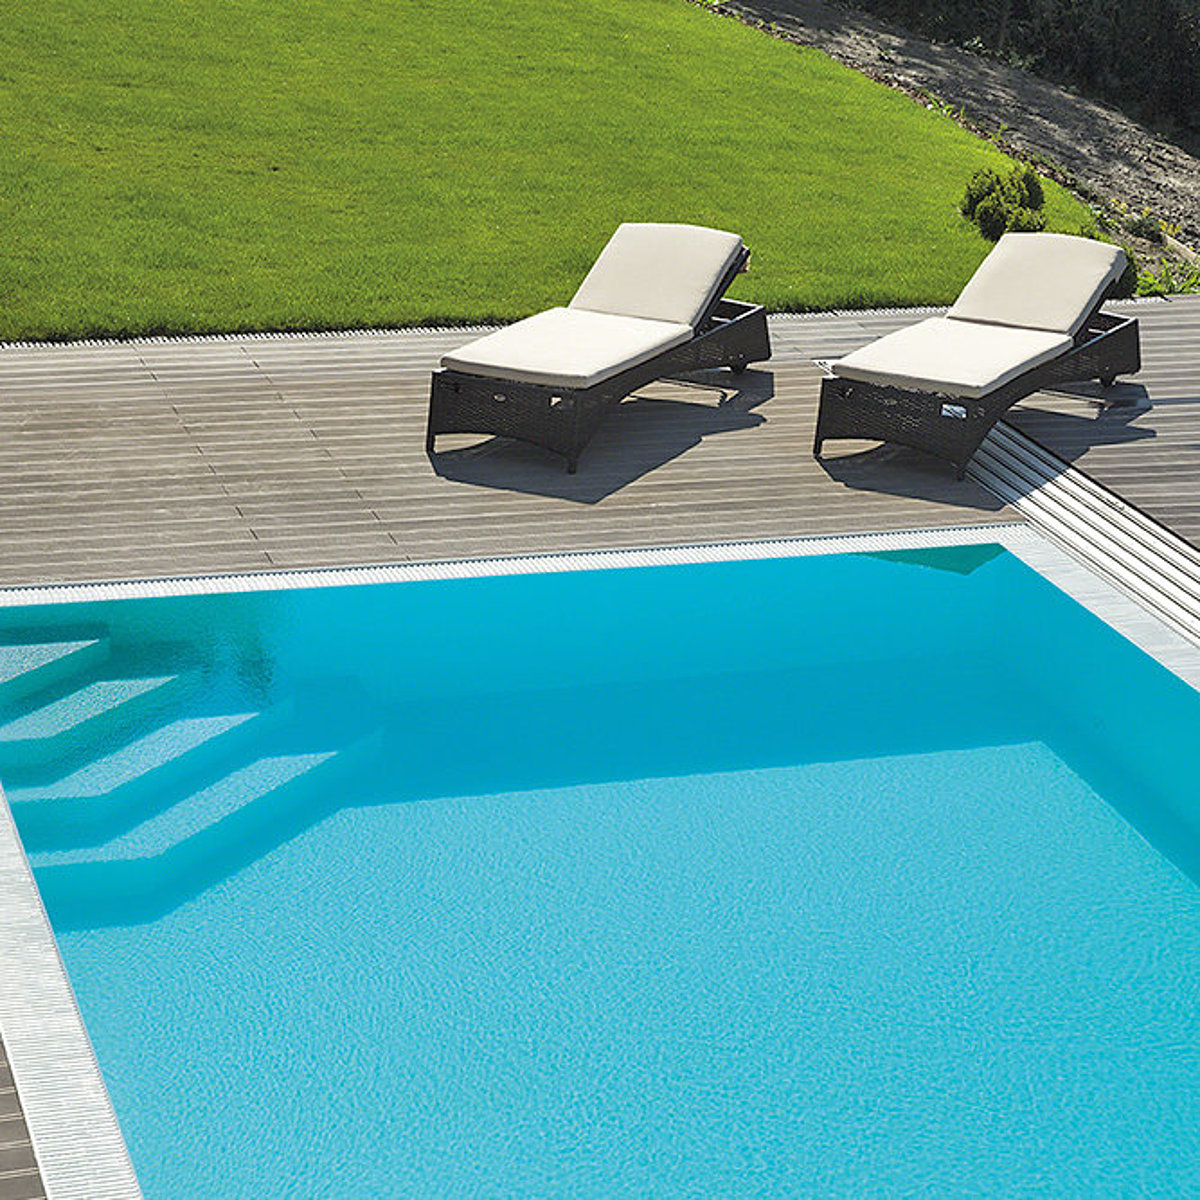 Een polystone-zwembad met trap om de hoek in de tuin. Aan de rand van het zwembad: twee ligstoelen.